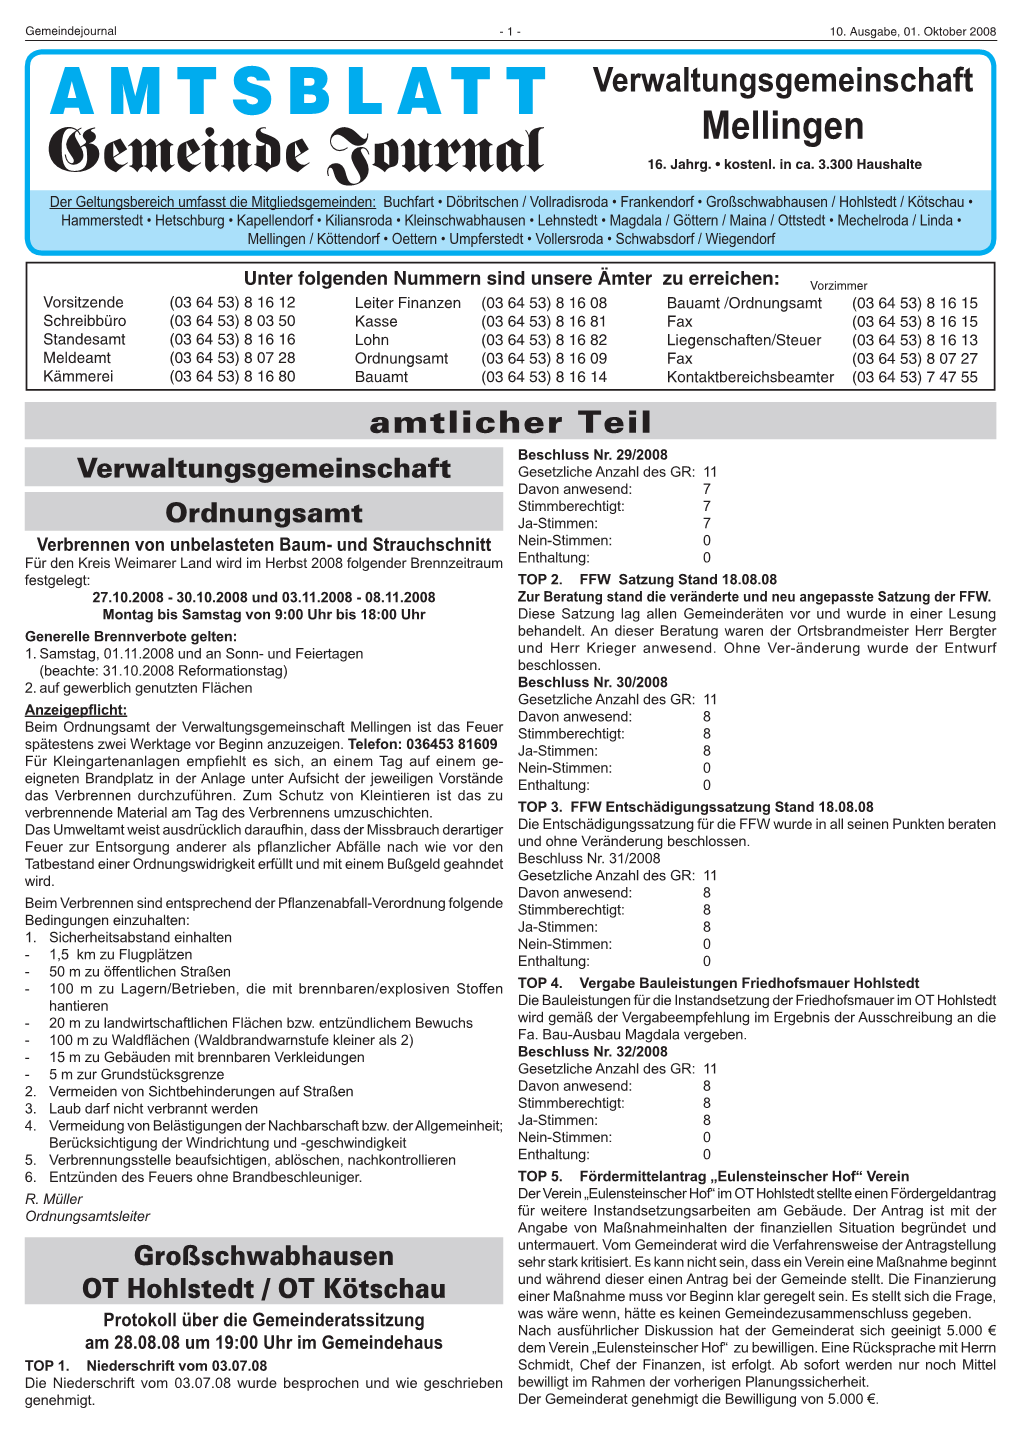 Amtsblatt 10-08.Indd